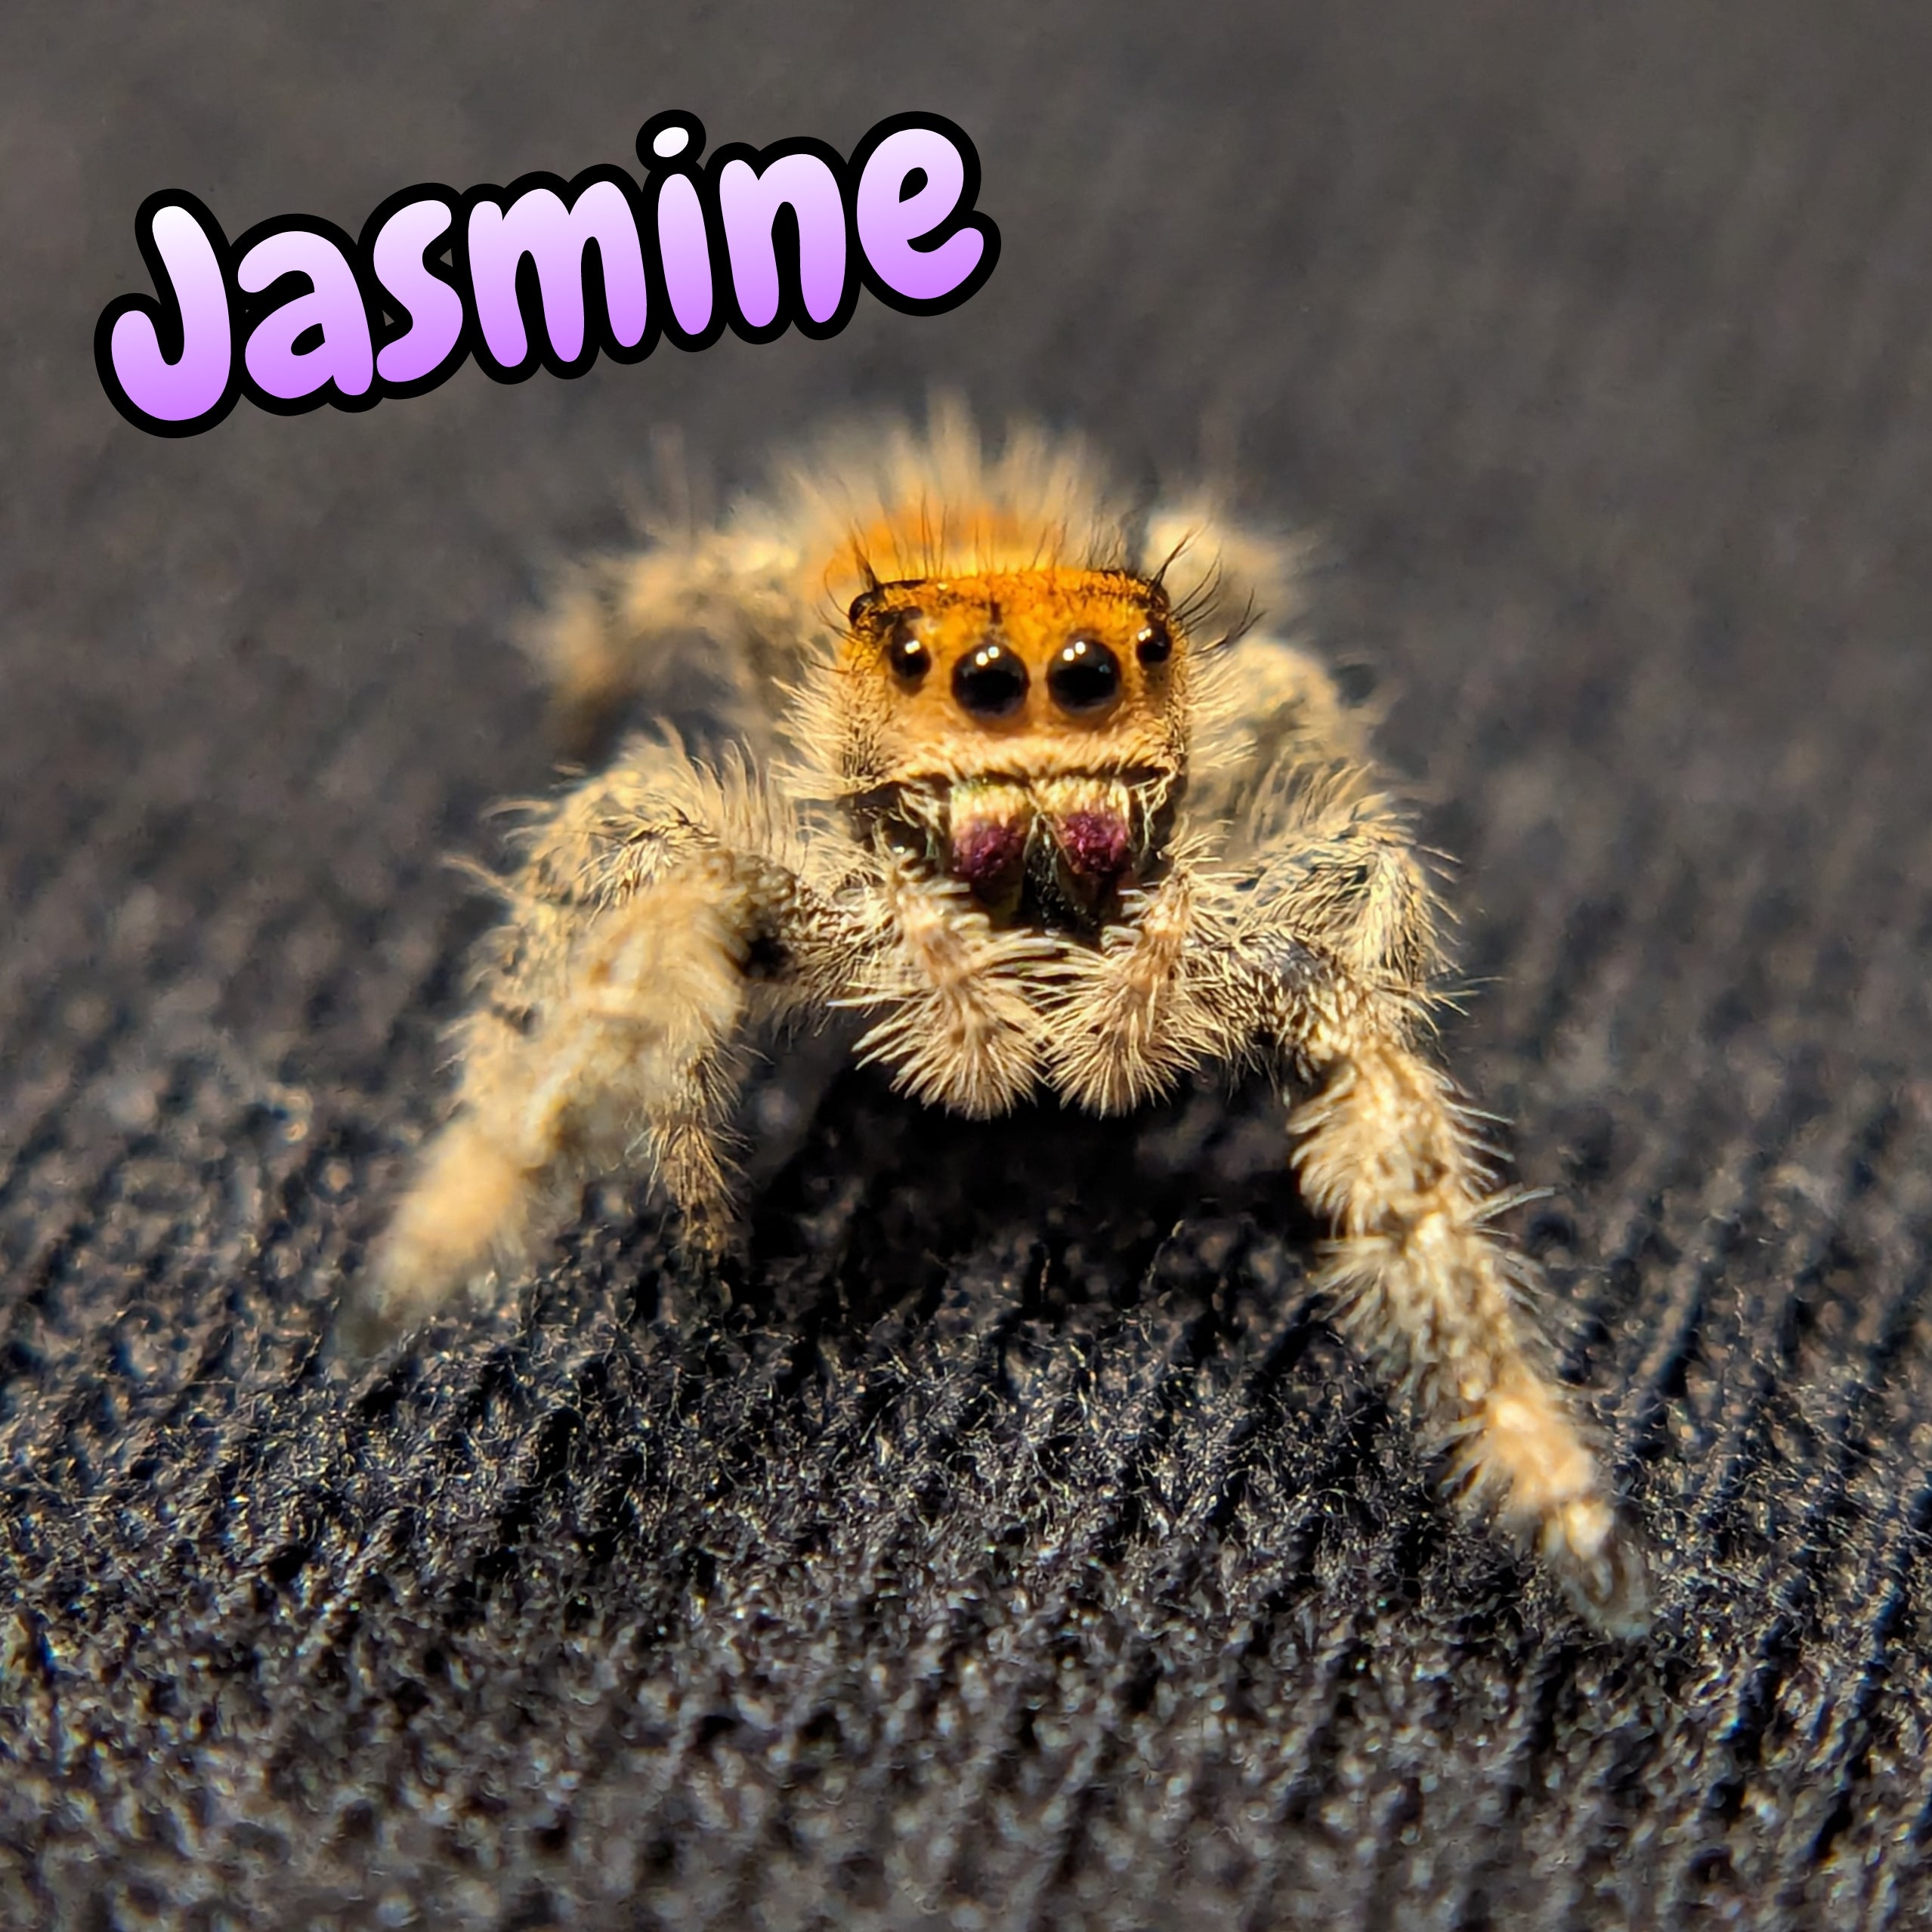 Regal Jumping Spider "Jasmine"